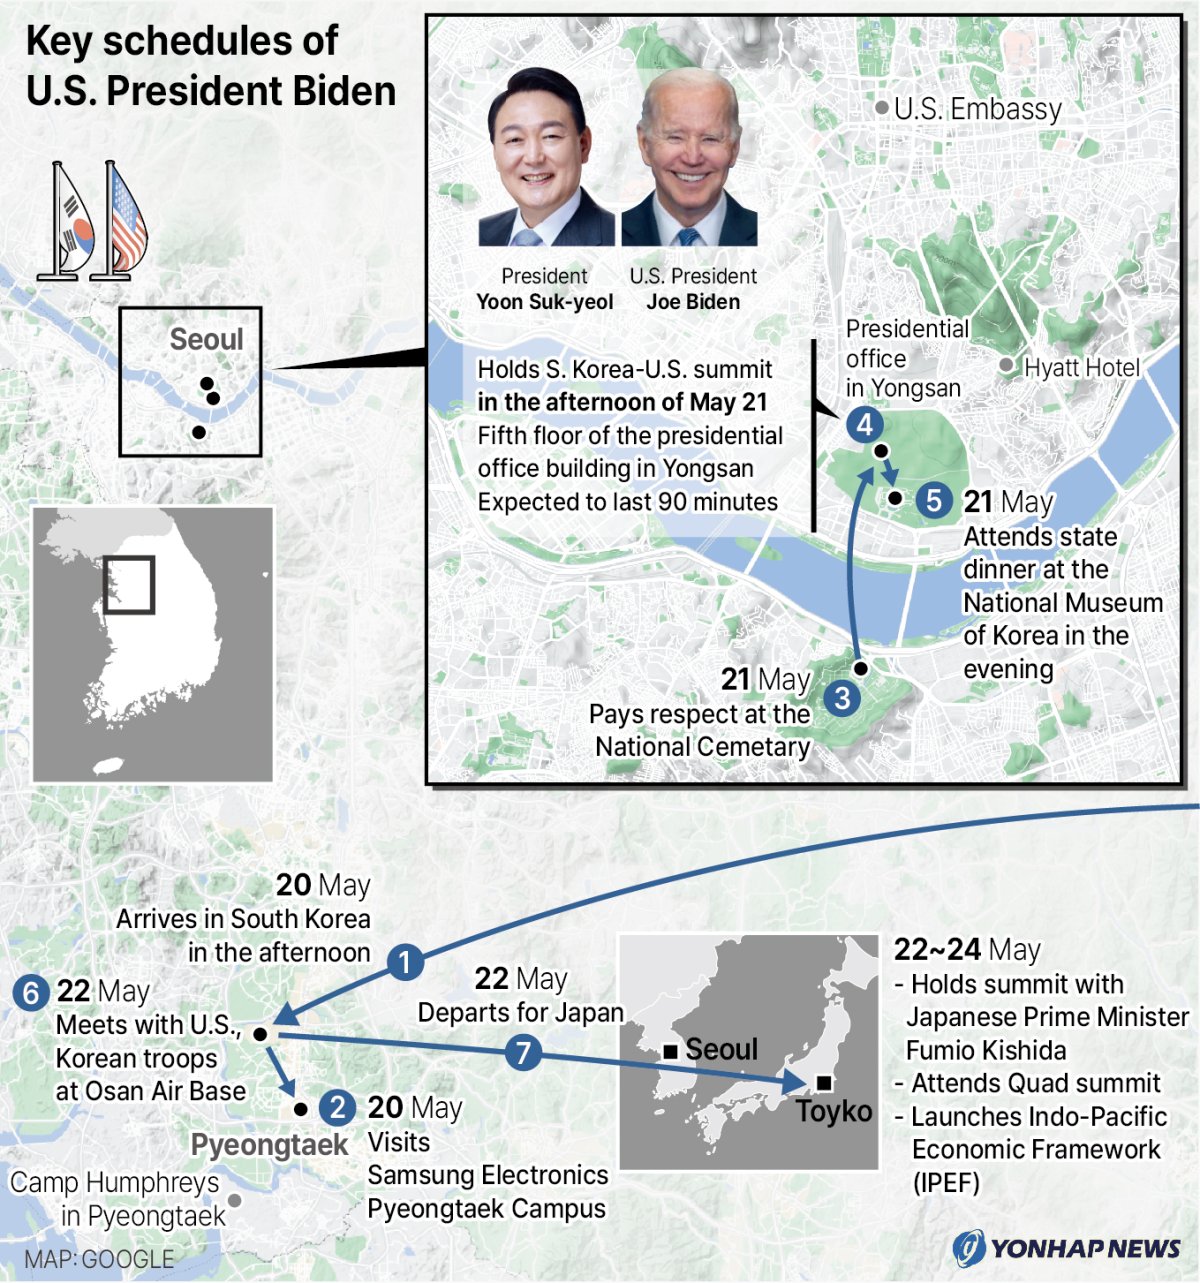 Key schedules of U.S. President Biden